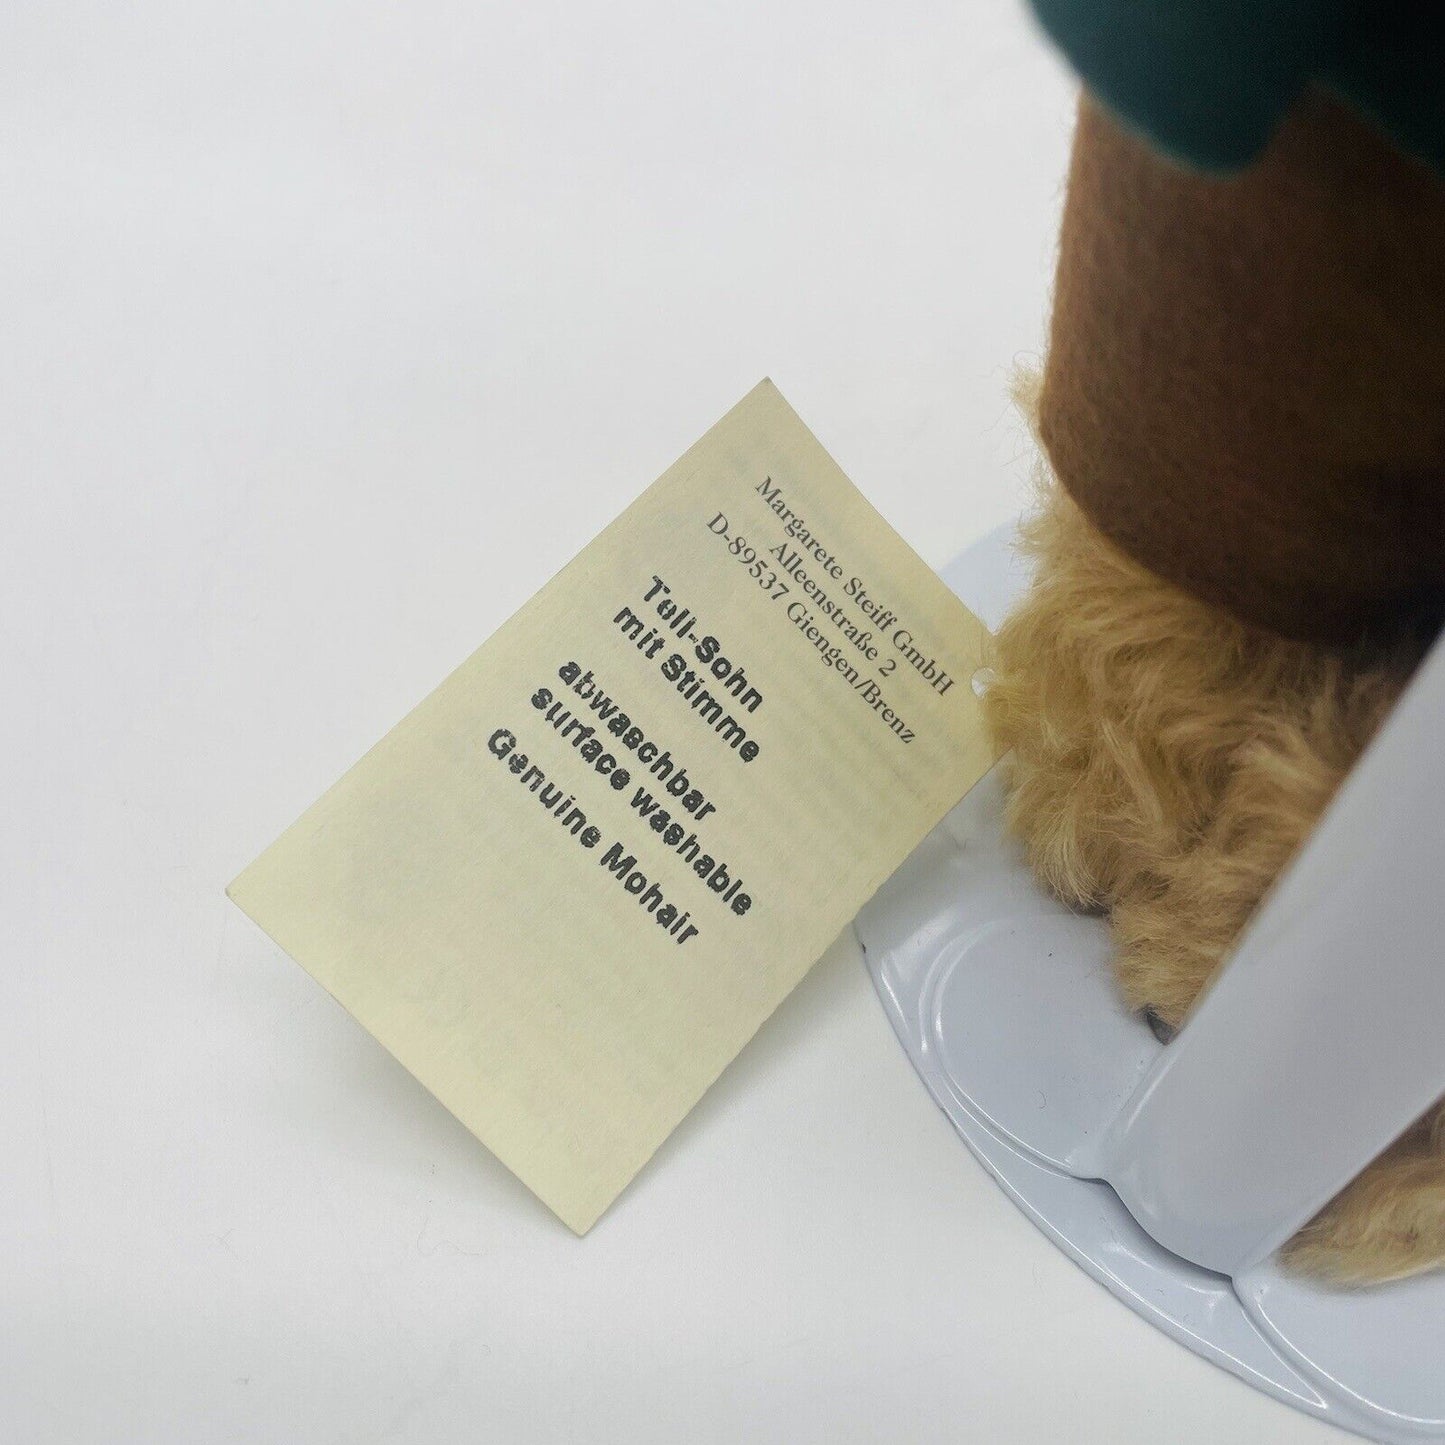 Steiff Teddybären Wilhelm Tell mit Stimme 996528 limitiert 1100 für Märklin